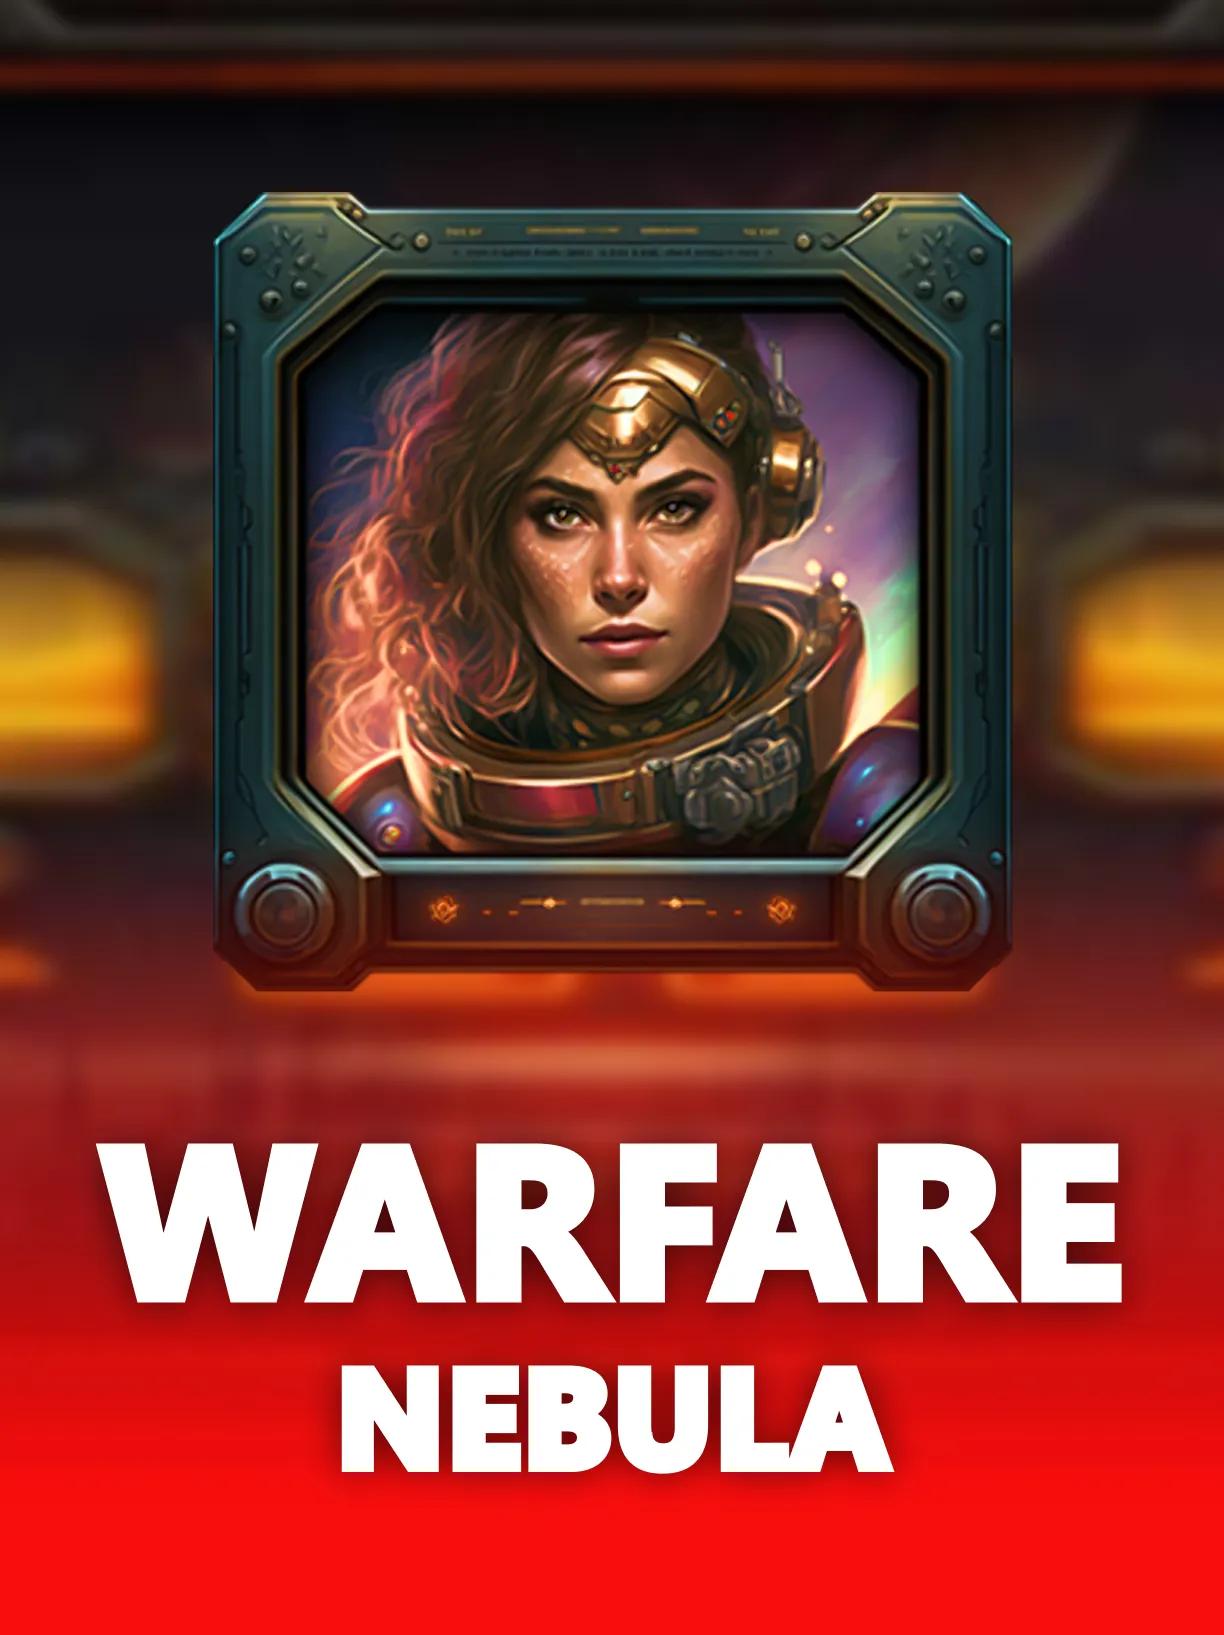 ug_Warfare_Nebula_square.webp